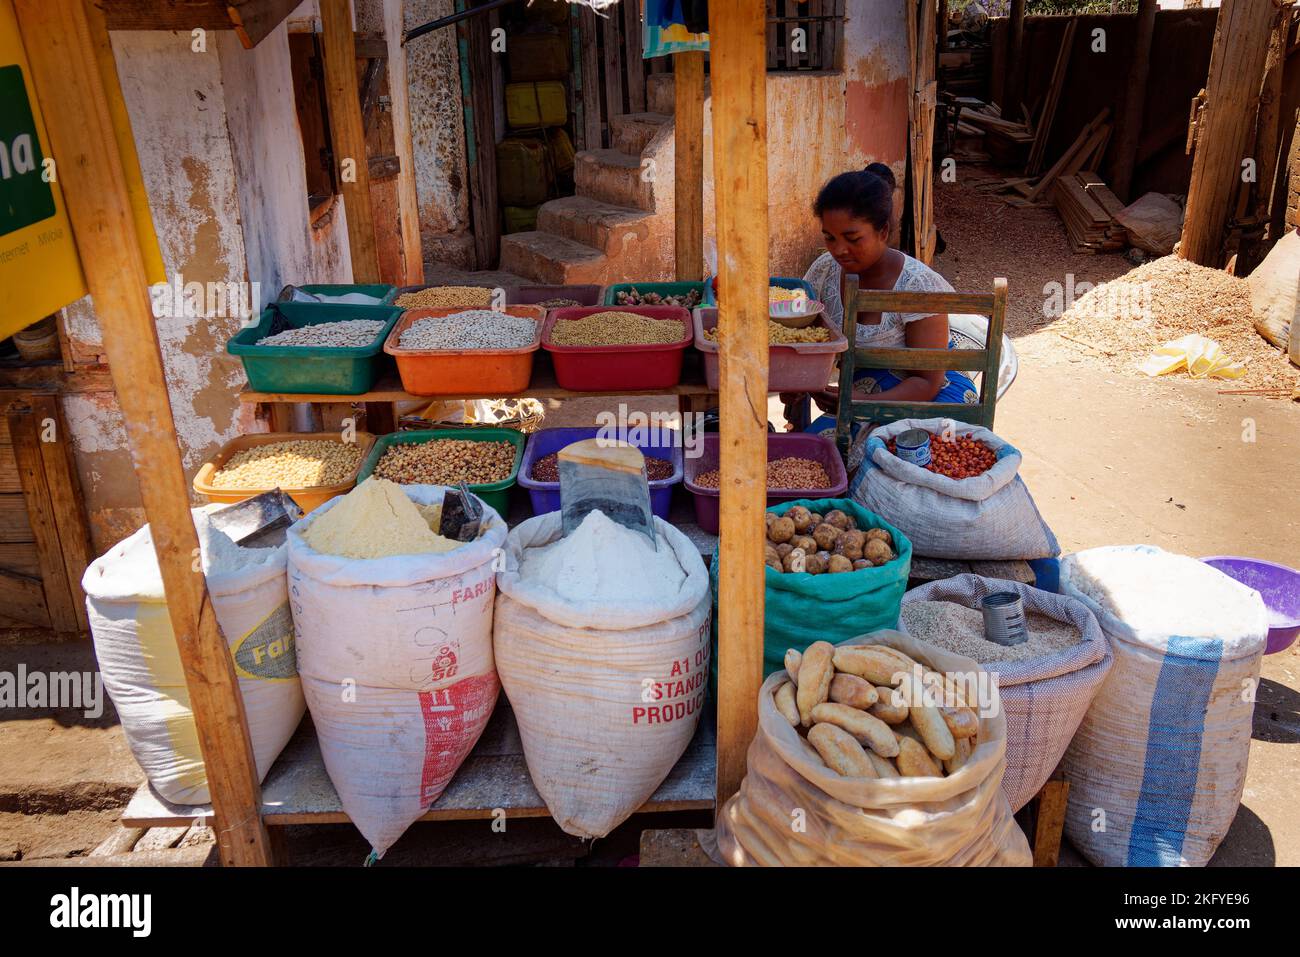 Rue stalle dans le village malgache de Madagascar, magasin de nourriture avec le grain, les graines, les légumineuses et autres. Vue typique de la rue en Afrique. Banque D'Images